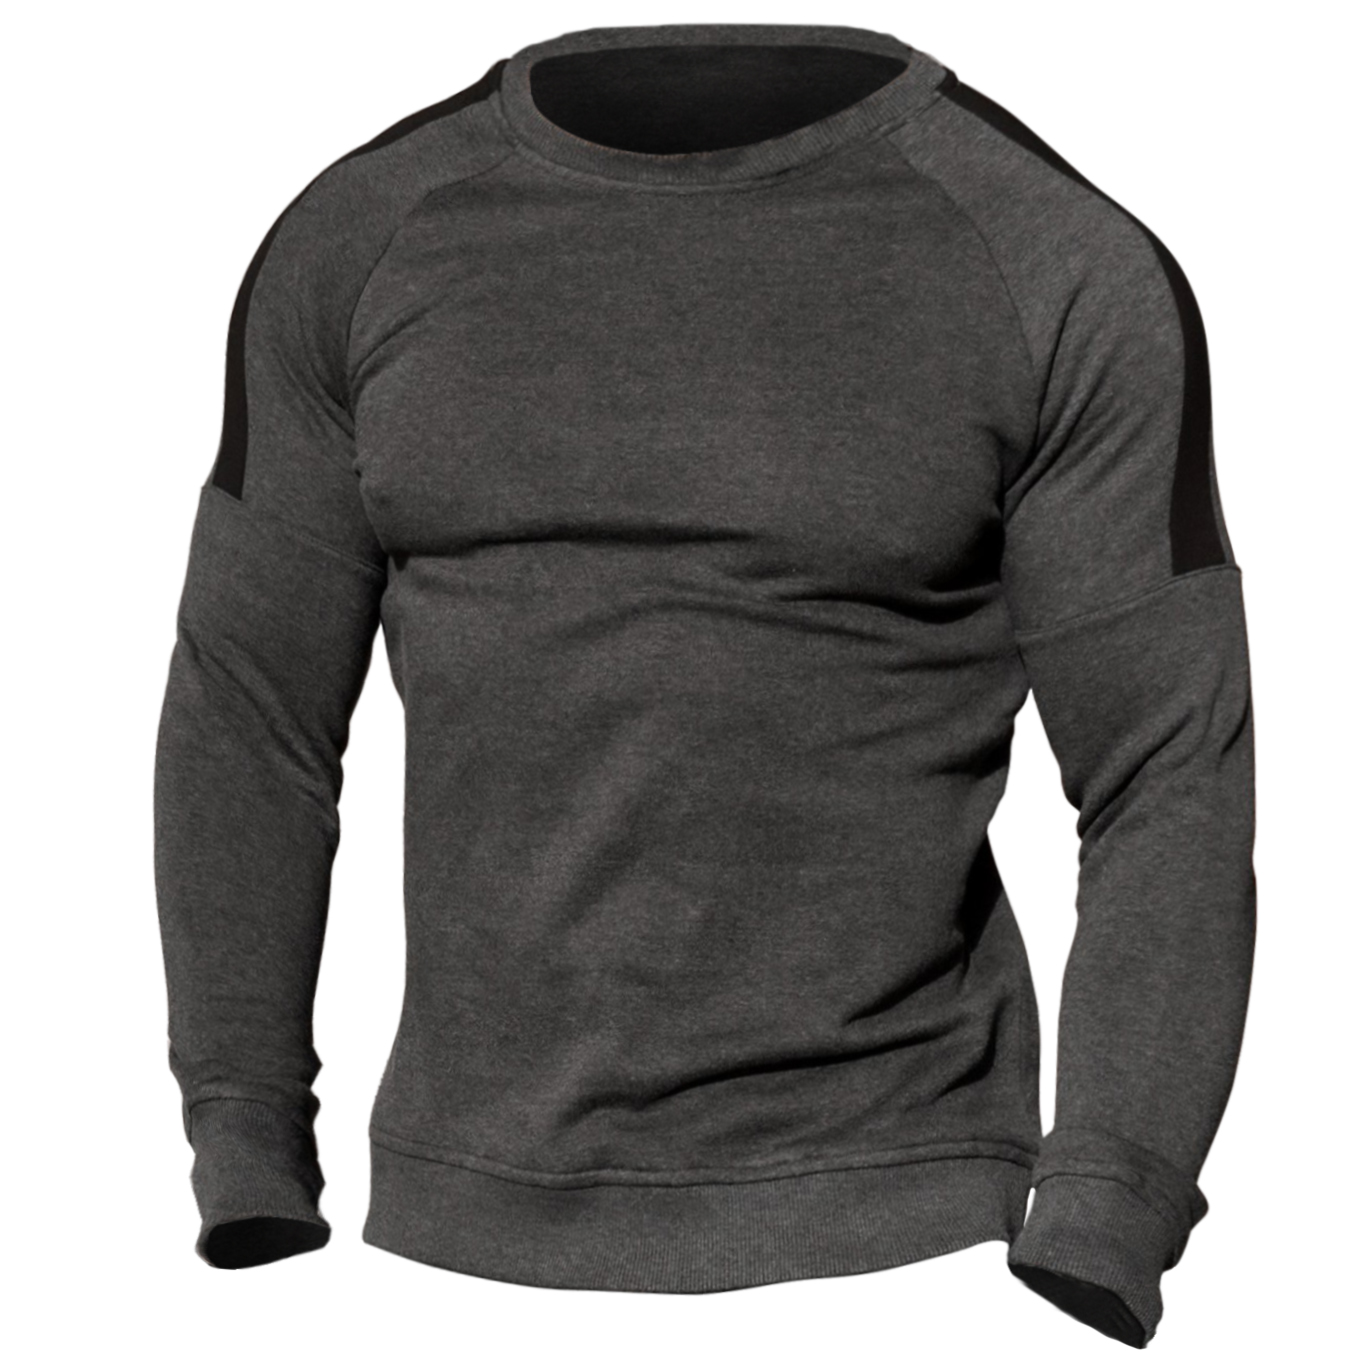 Men's Outdoor Cold-proof Round Neck Chic Sweatshirt